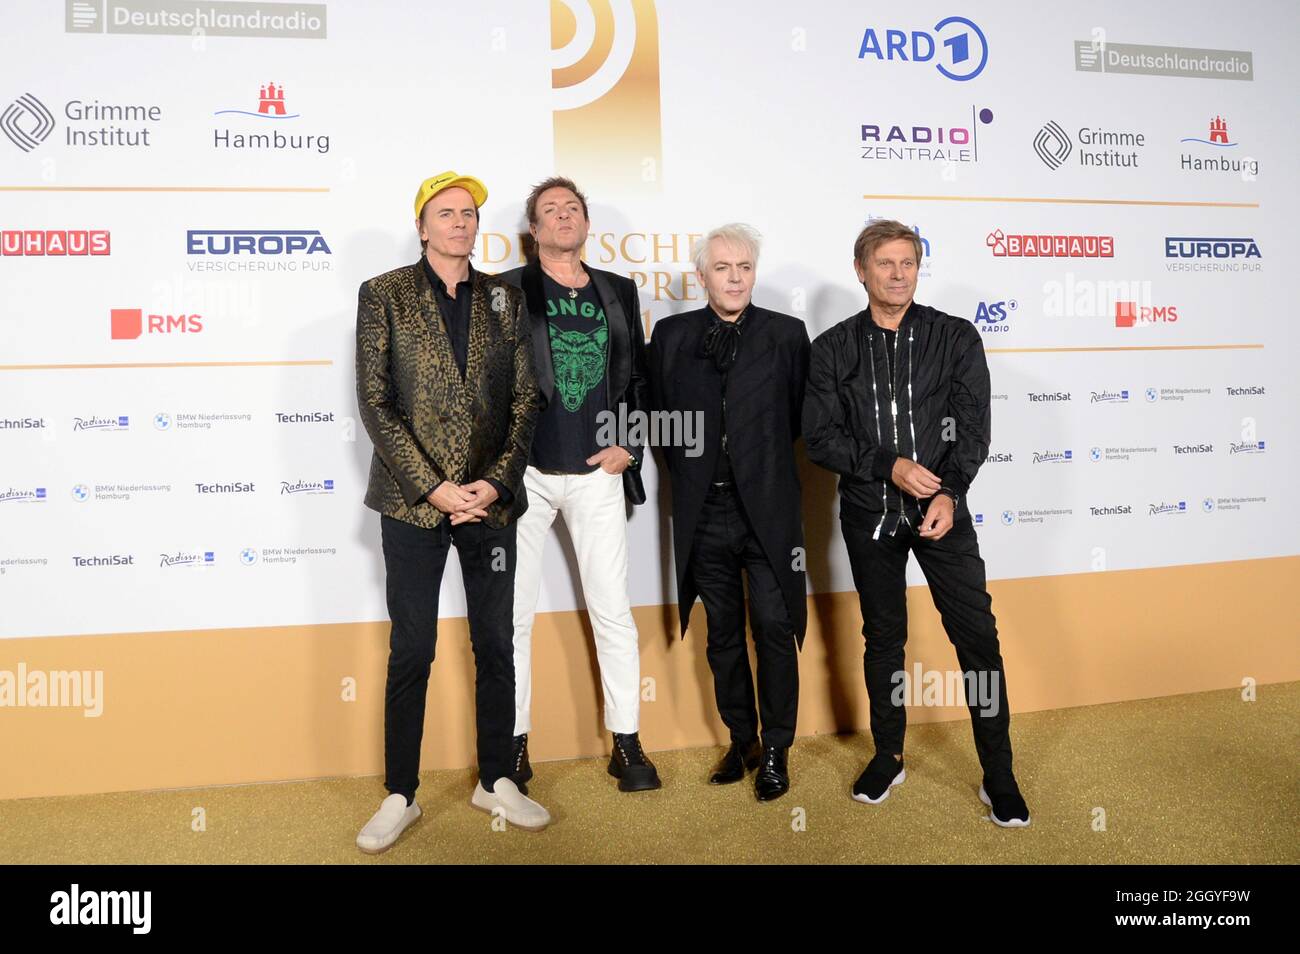 Hamburg der 02.09.2021 - John Taylor, Simon Le Bon, Nick Rhodes und Roger Taylor (v. li.) der britischen Band Duran Duran bei der Verleihung Deutscher Stockfoto